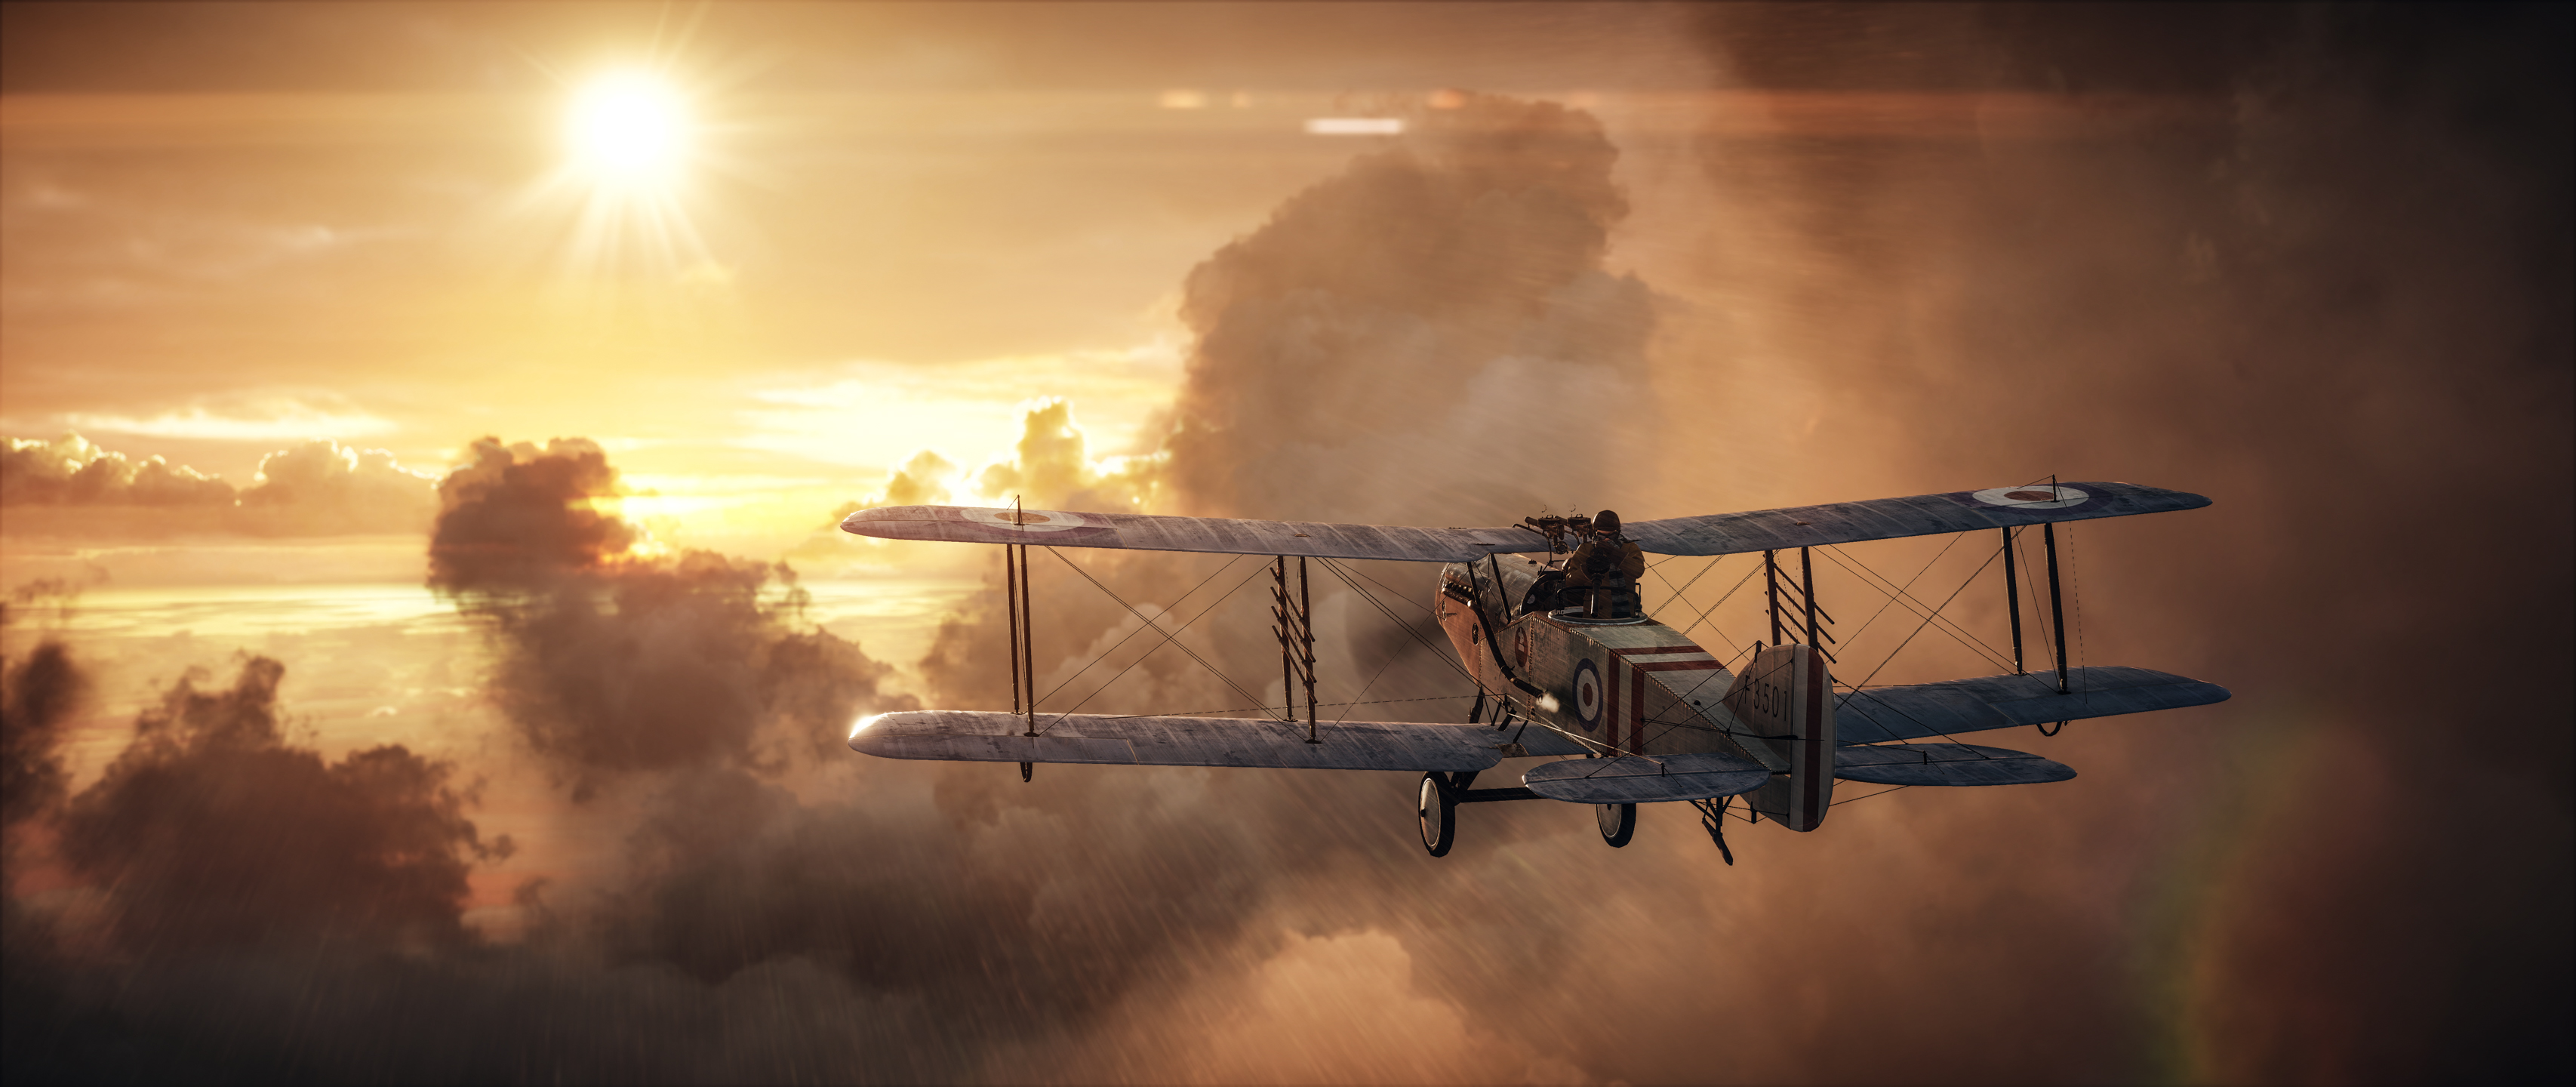 Battlefield 1 Aircraft Cloud Wallpaper